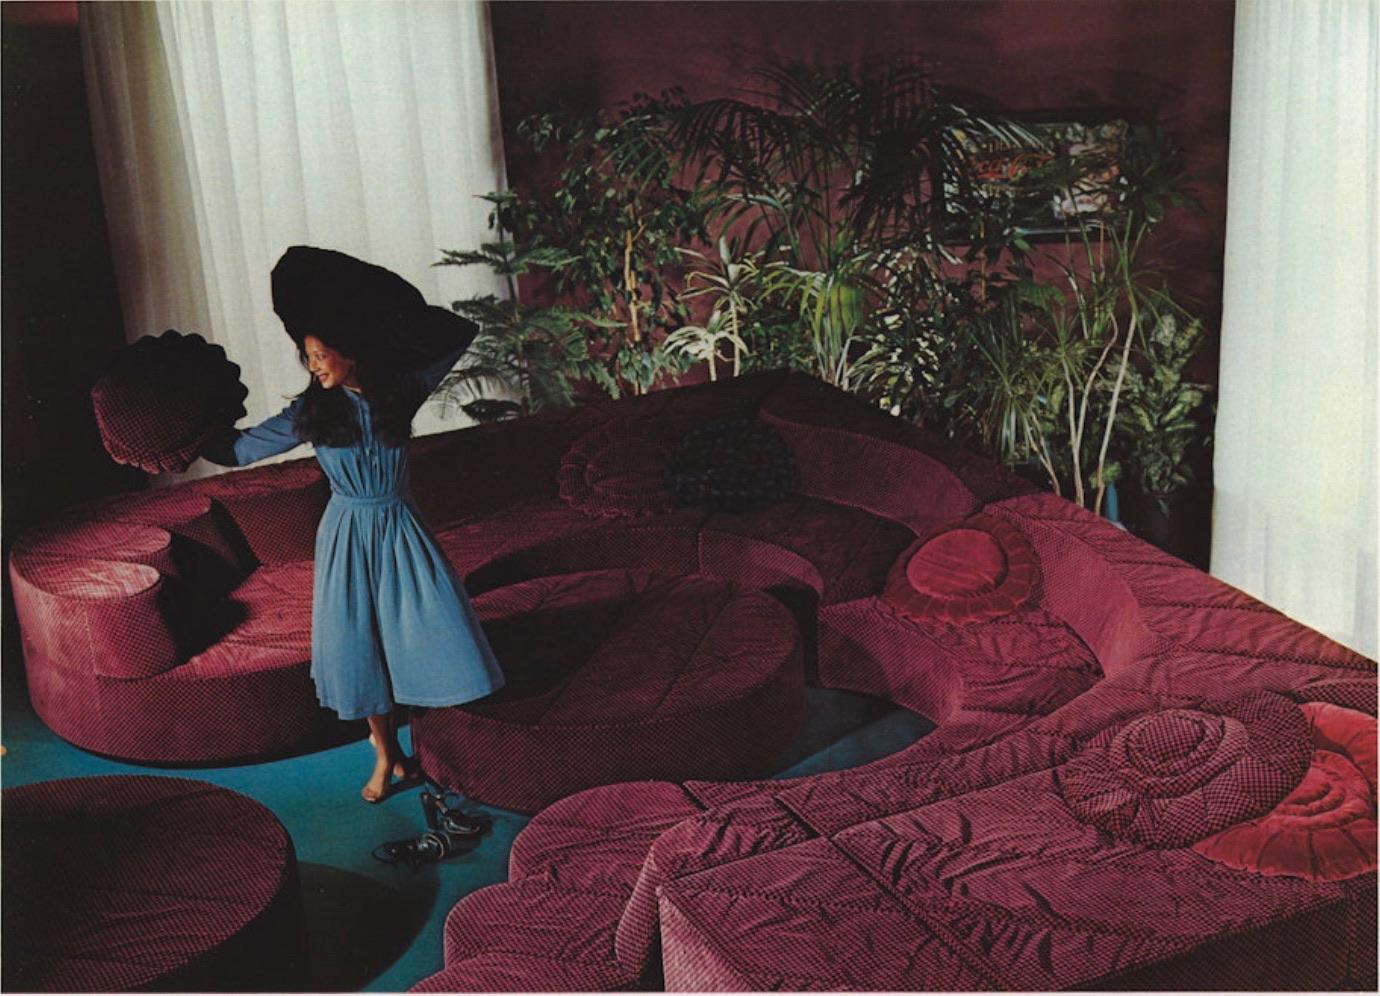 Roche Bobois “Paysage” Sofa In Coral Velvet By Hans Hopfer For Roche Bobois 1974 13